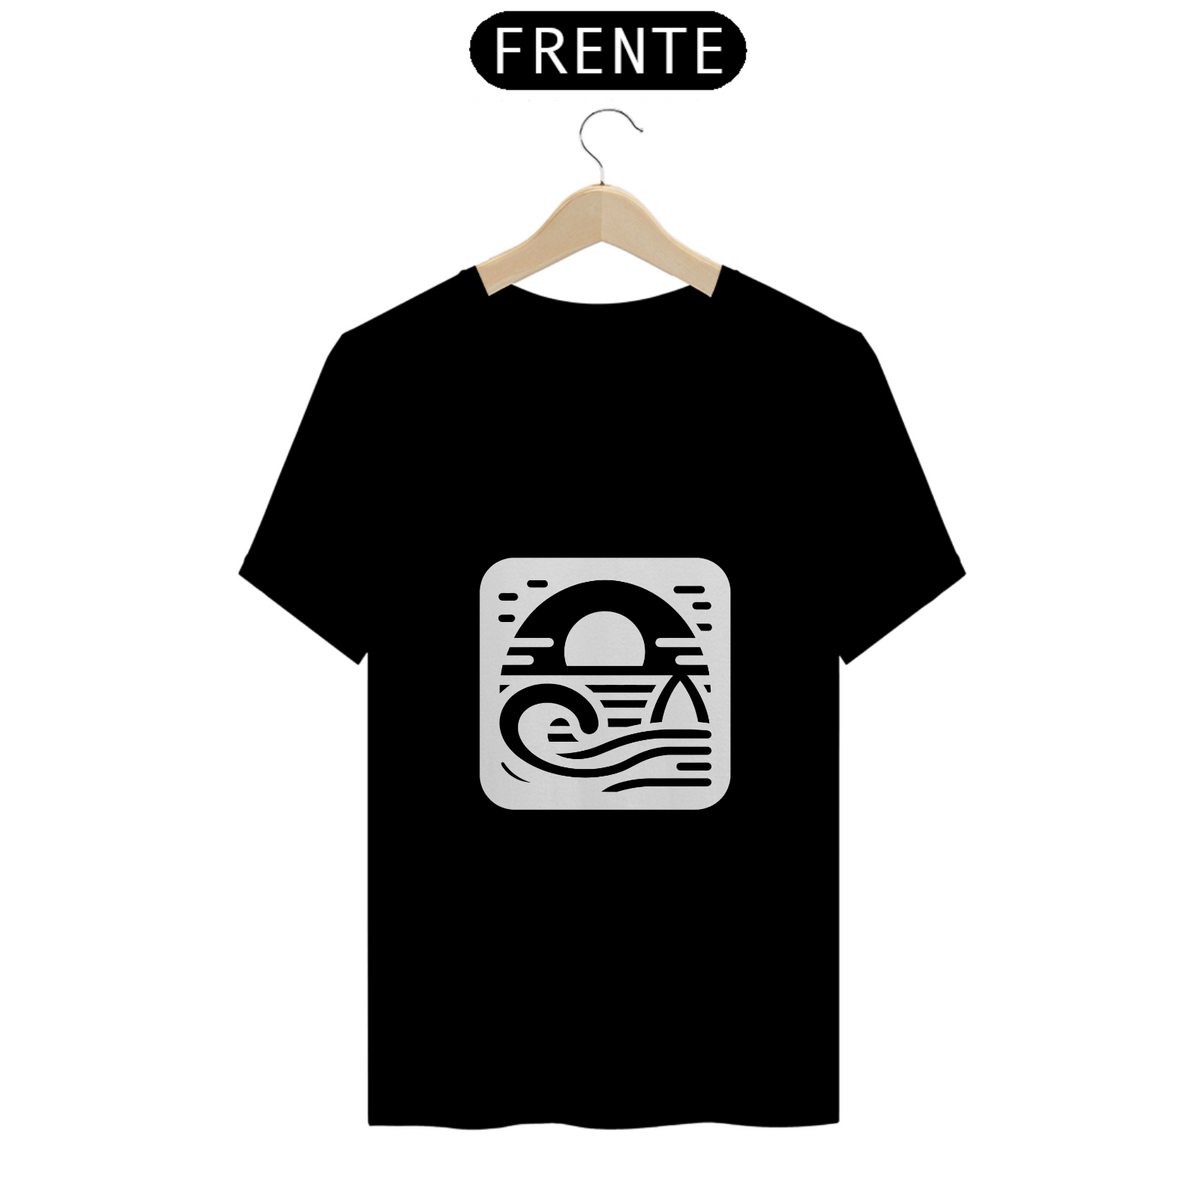 Nome do produto: Camiseta Surfland Oficial